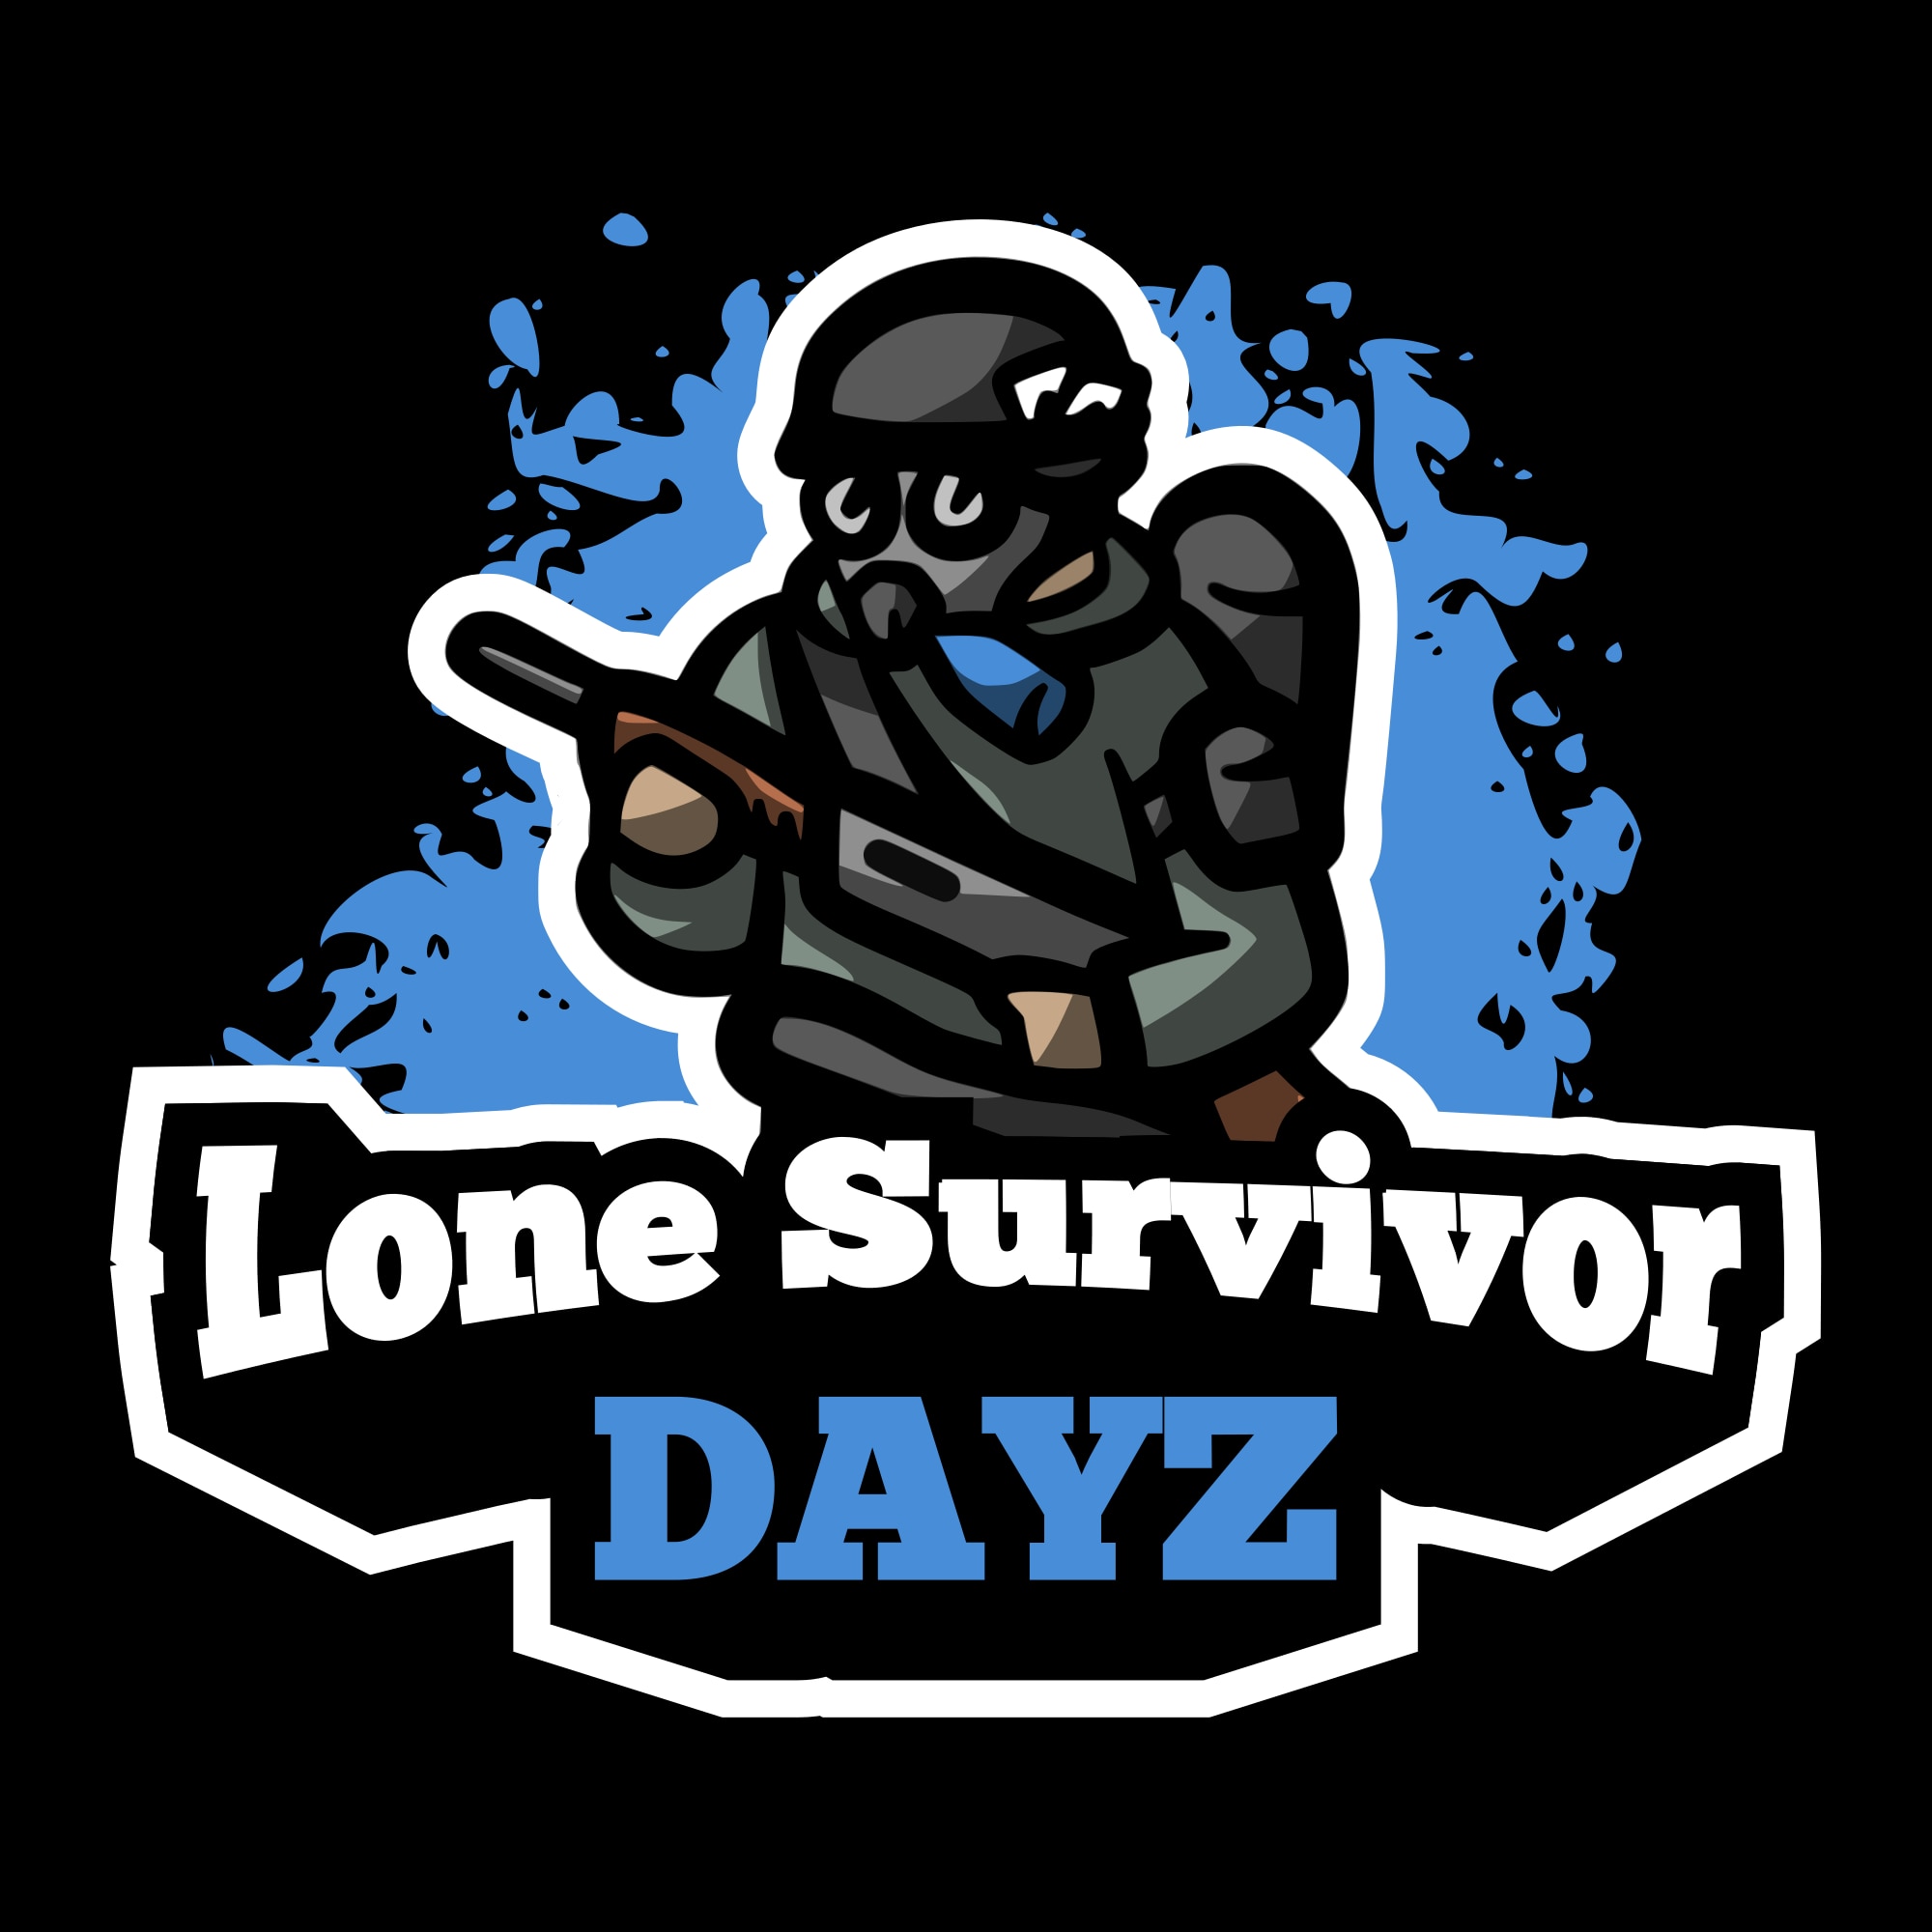 Steam Workshop::Lone Survivor DayZ - Mod Collection